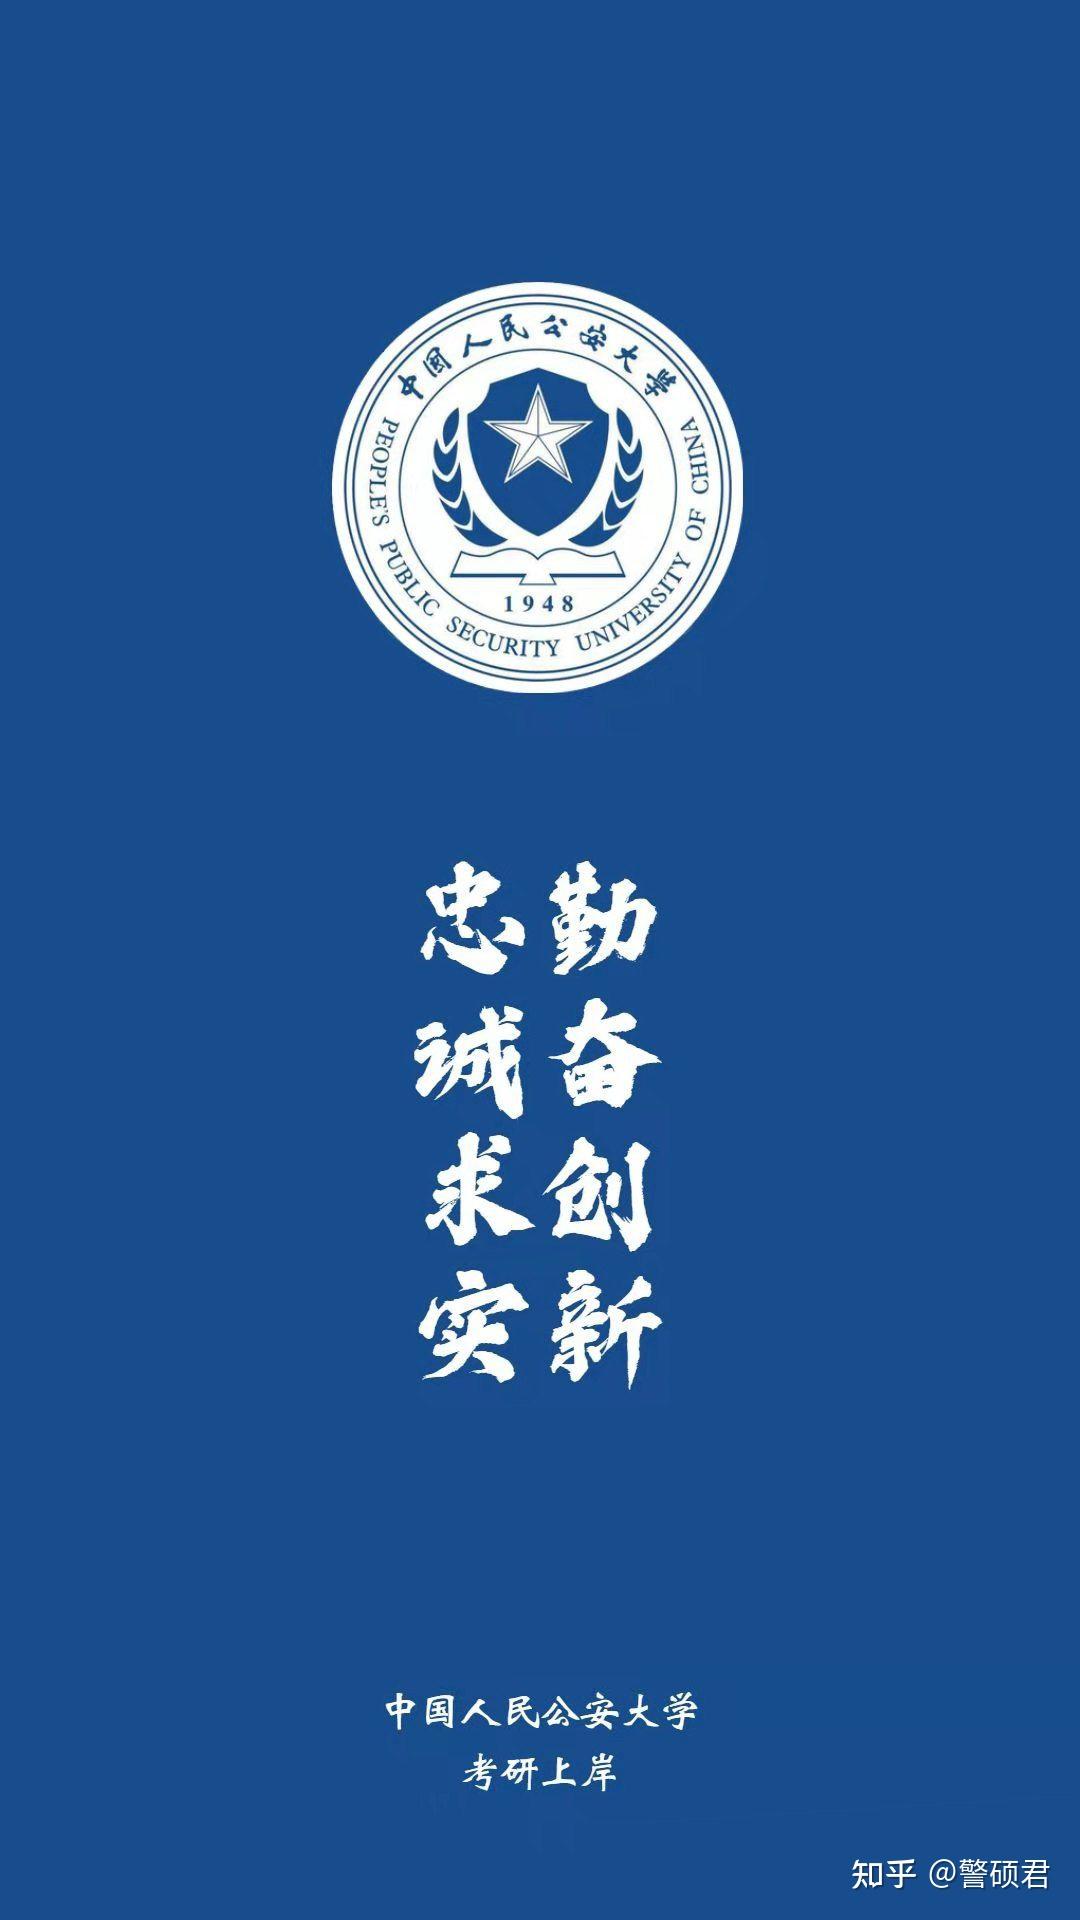 具体要求有变化!中国人民公安大学2022年研究生招生章程公布!